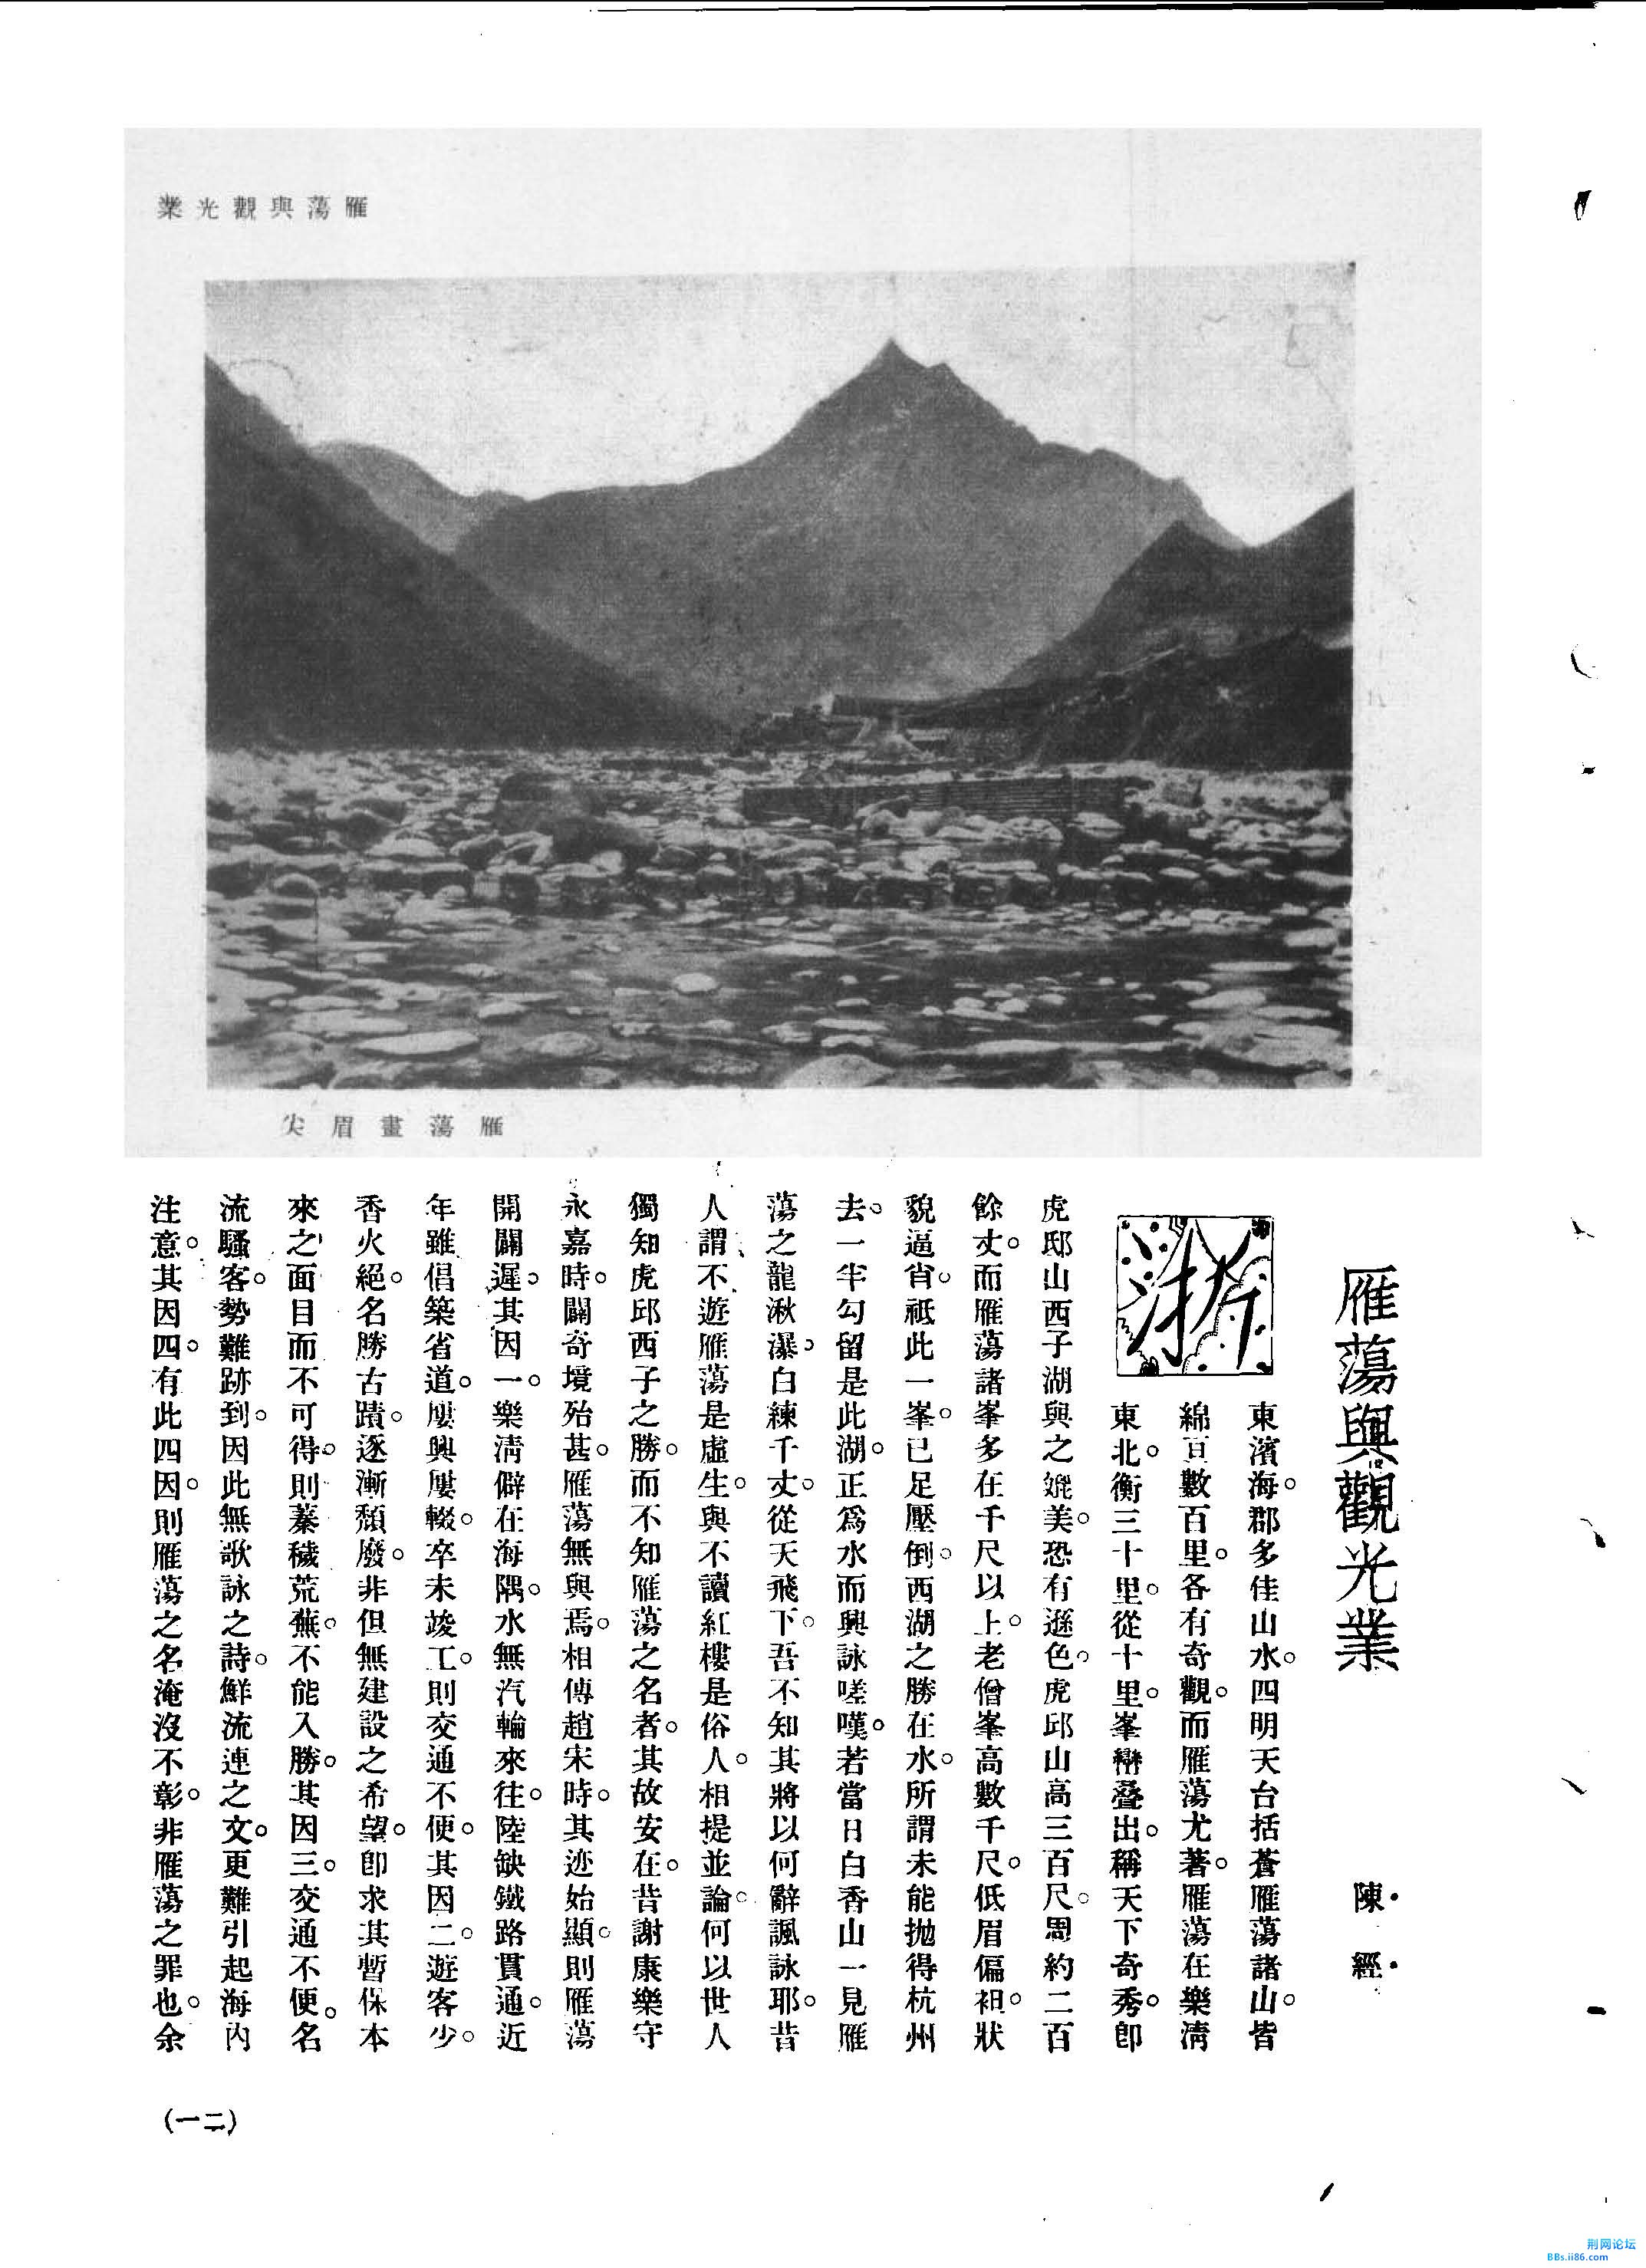 】陈经.雁荡与观光业[J].旅行杂志,1932,(第9号)._页面_1.jpg